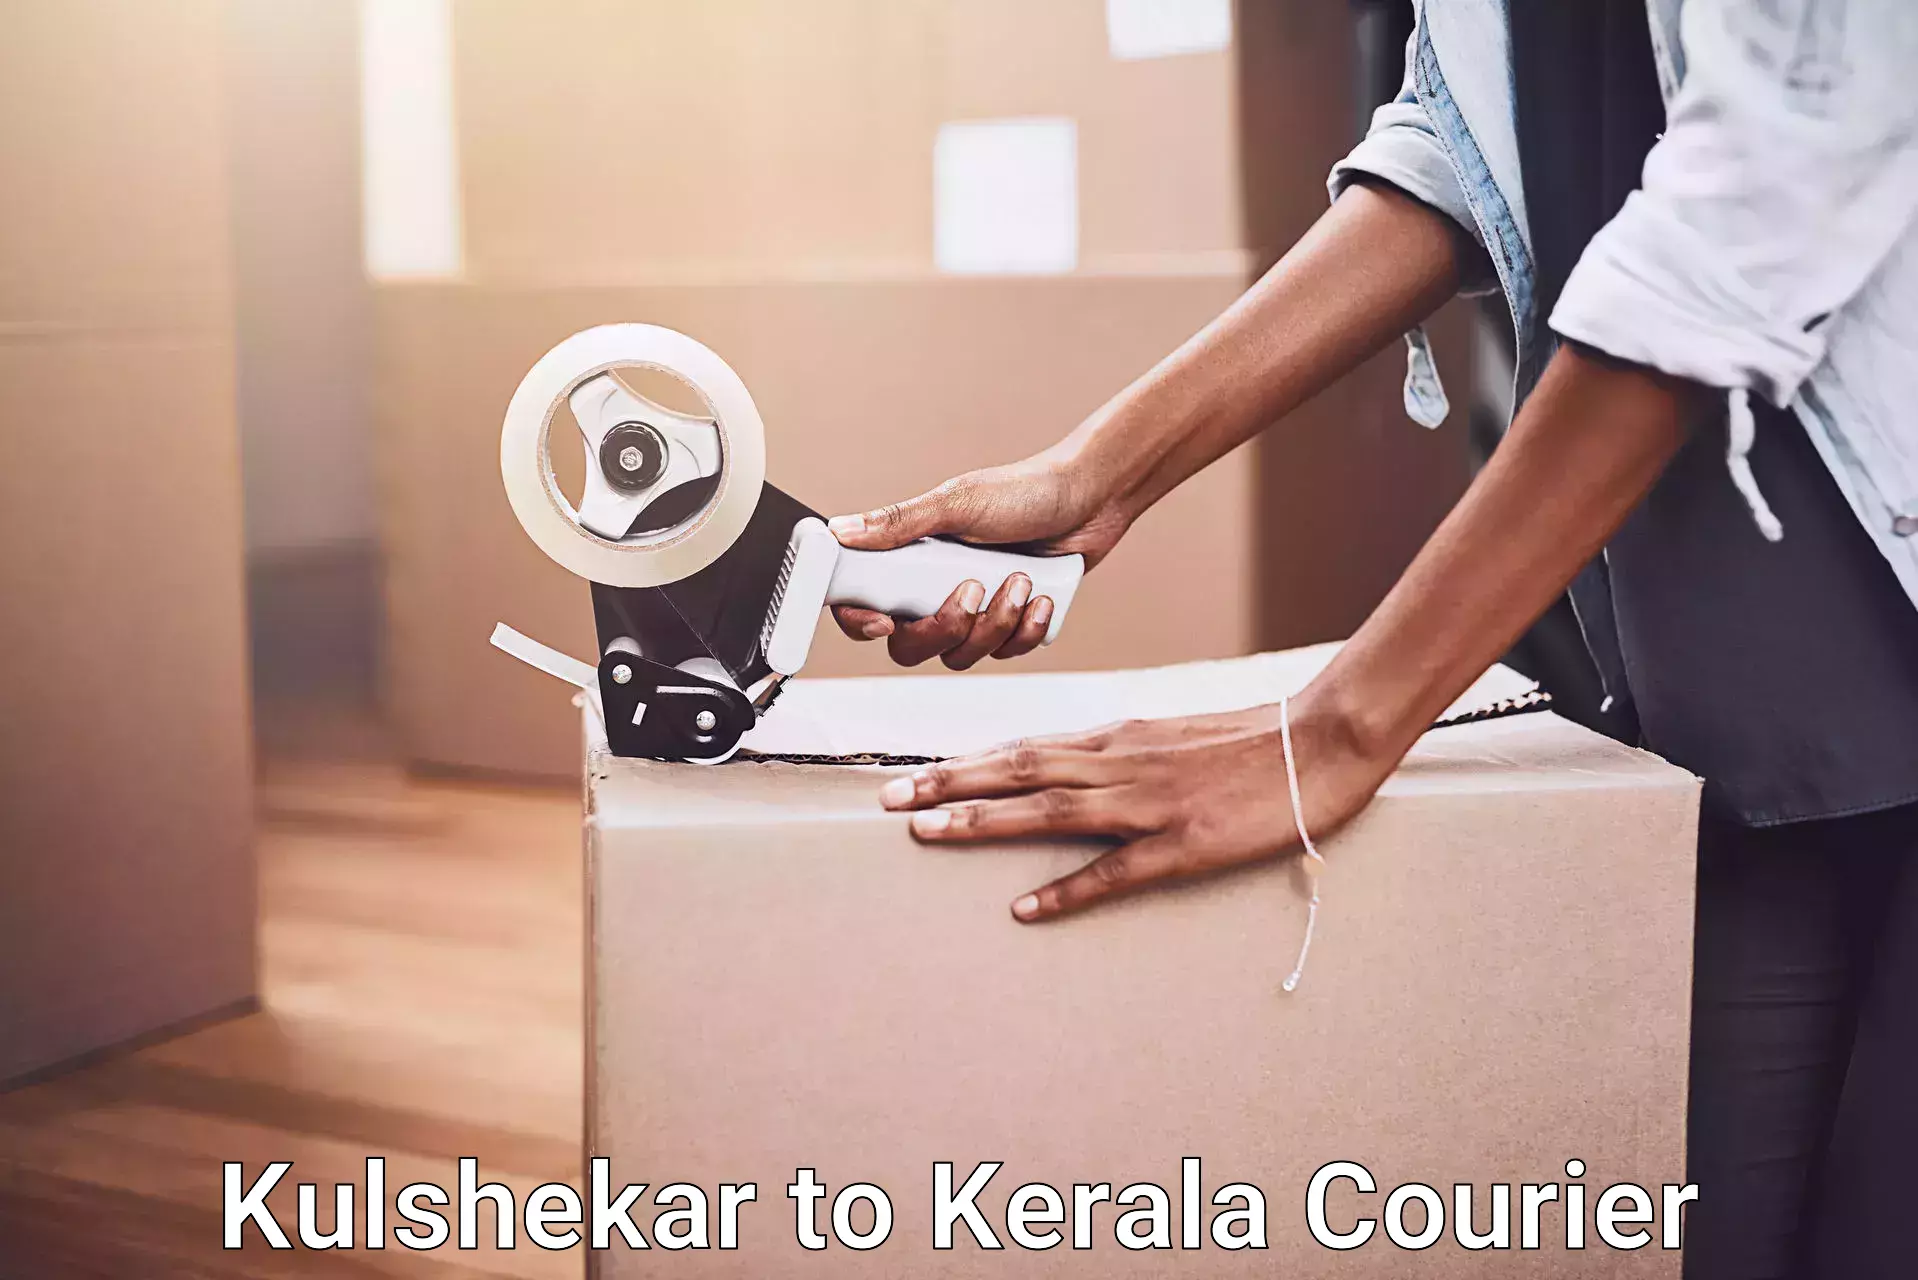 Residential furniture movers Kulshekar to Shoranur